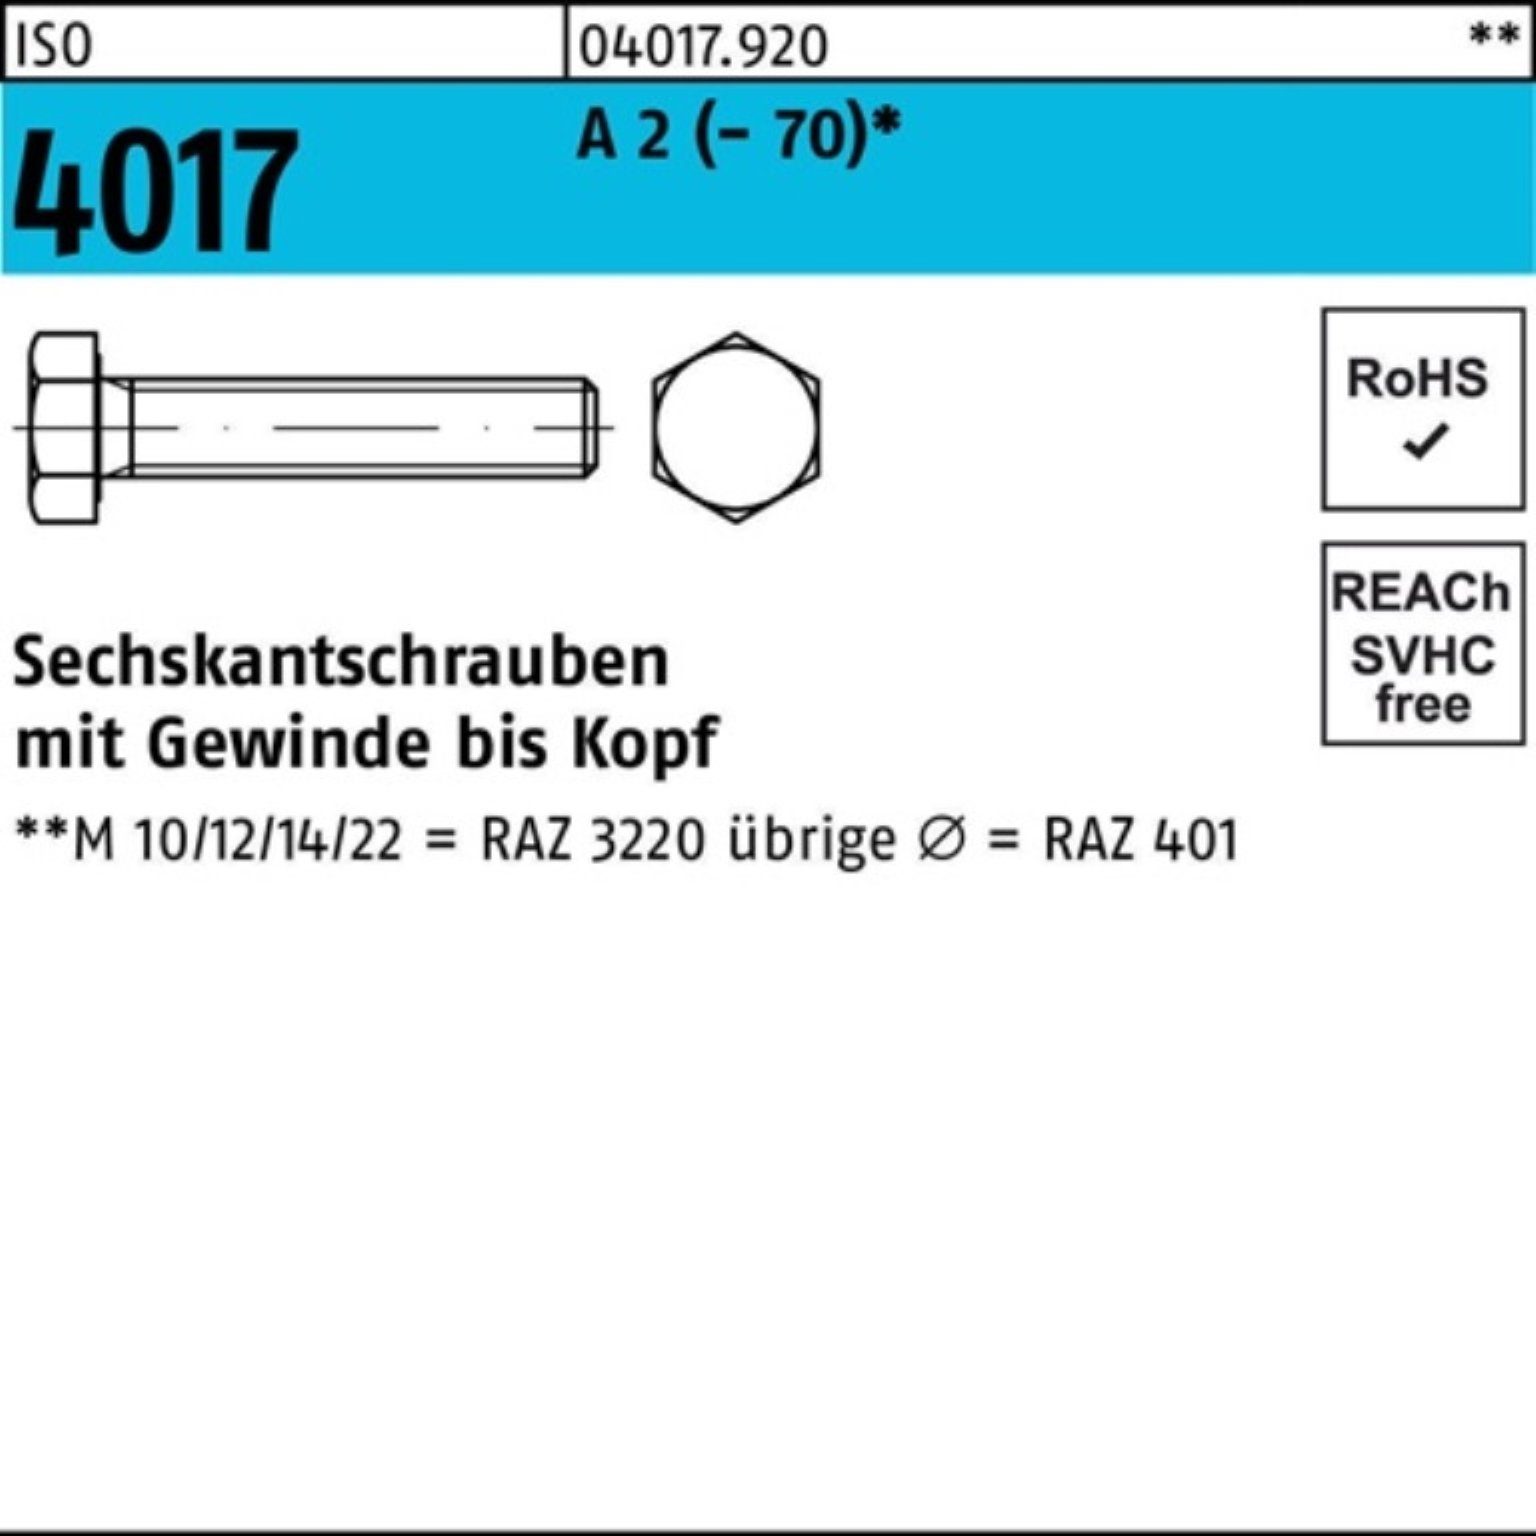 Bufab Sechskantschraube 100er Pack Sechskantschraube ISO 4017 VG M27x 100 A 2 (70) 1 Stück